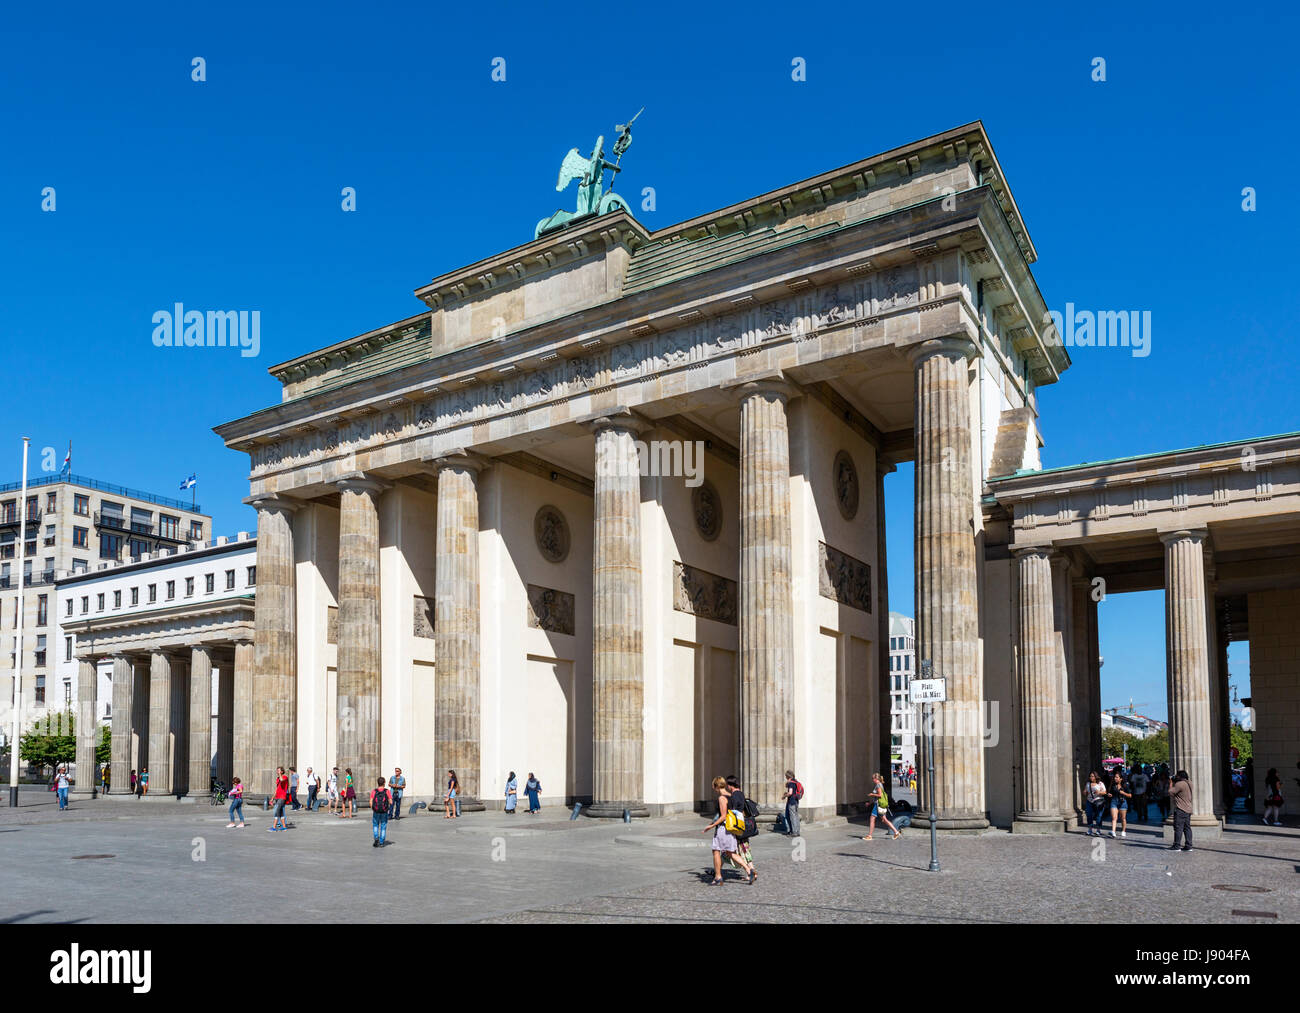 La porte de Brandebourg (Brandenburger Tor) de la Platz des 18 Marz, Mitte, Berlin, Allemagne Banque D'Images